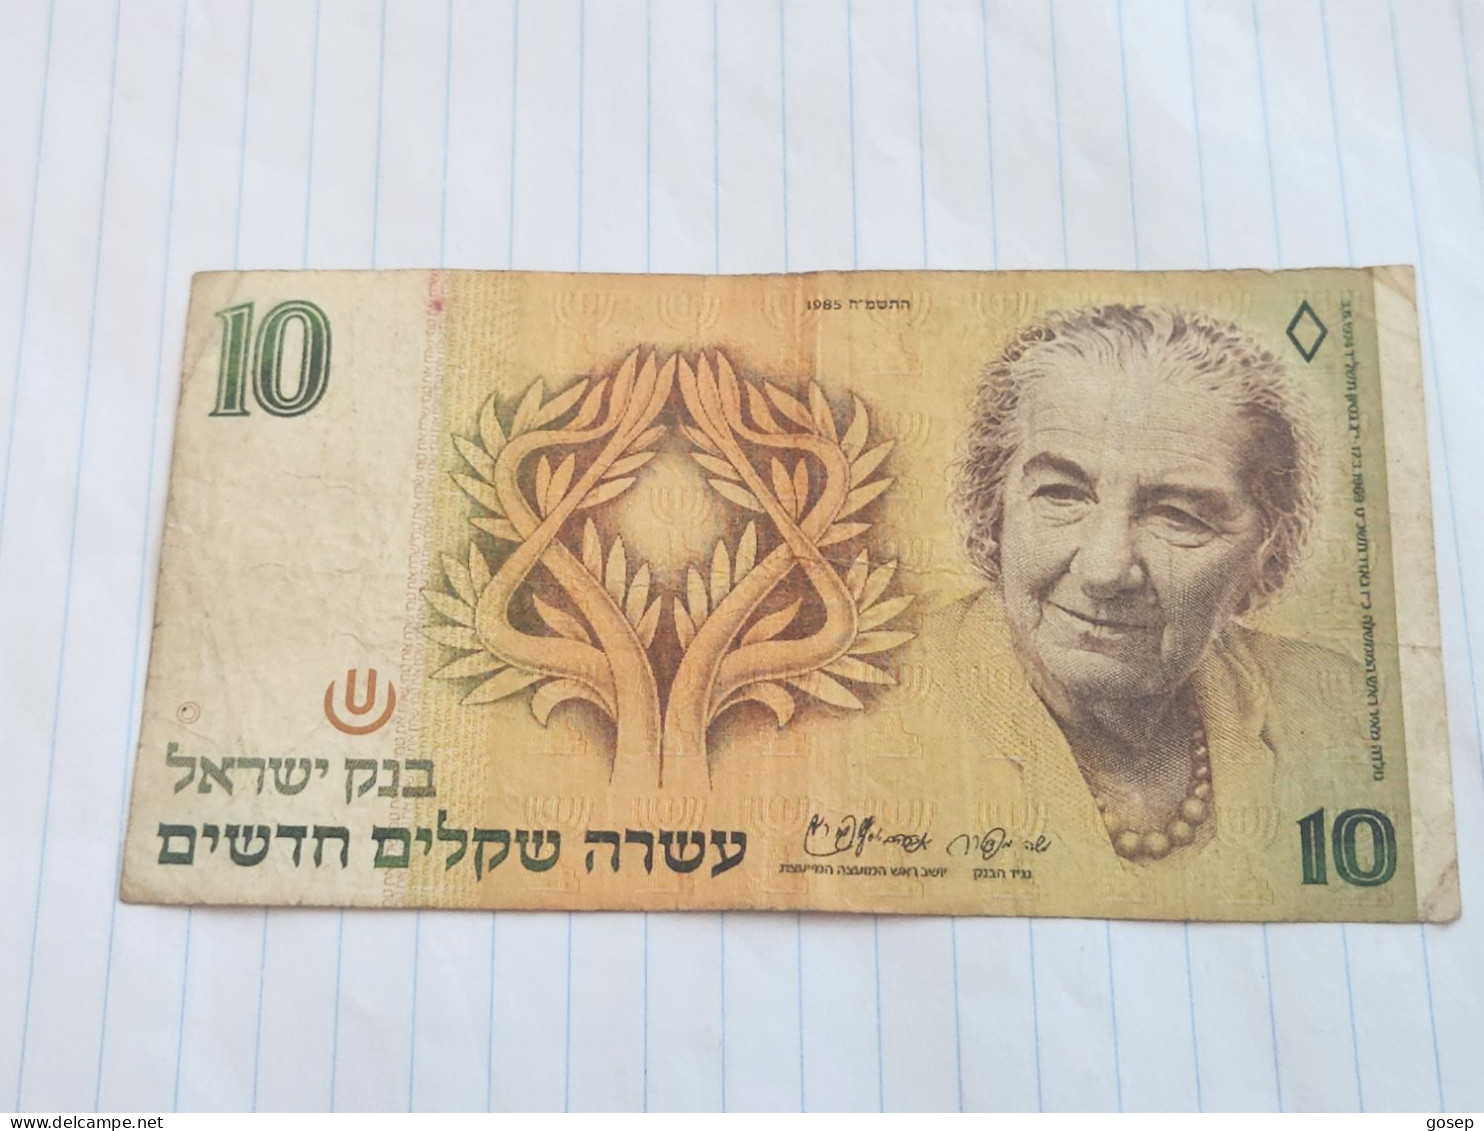 Israel-10 NEW SHEQELIM-GOLDA MEIR-(1985)(526)(MENDELBAUM/SHAPIRA)-(8998379037)-wrinkle-stain Bank Note - Israel